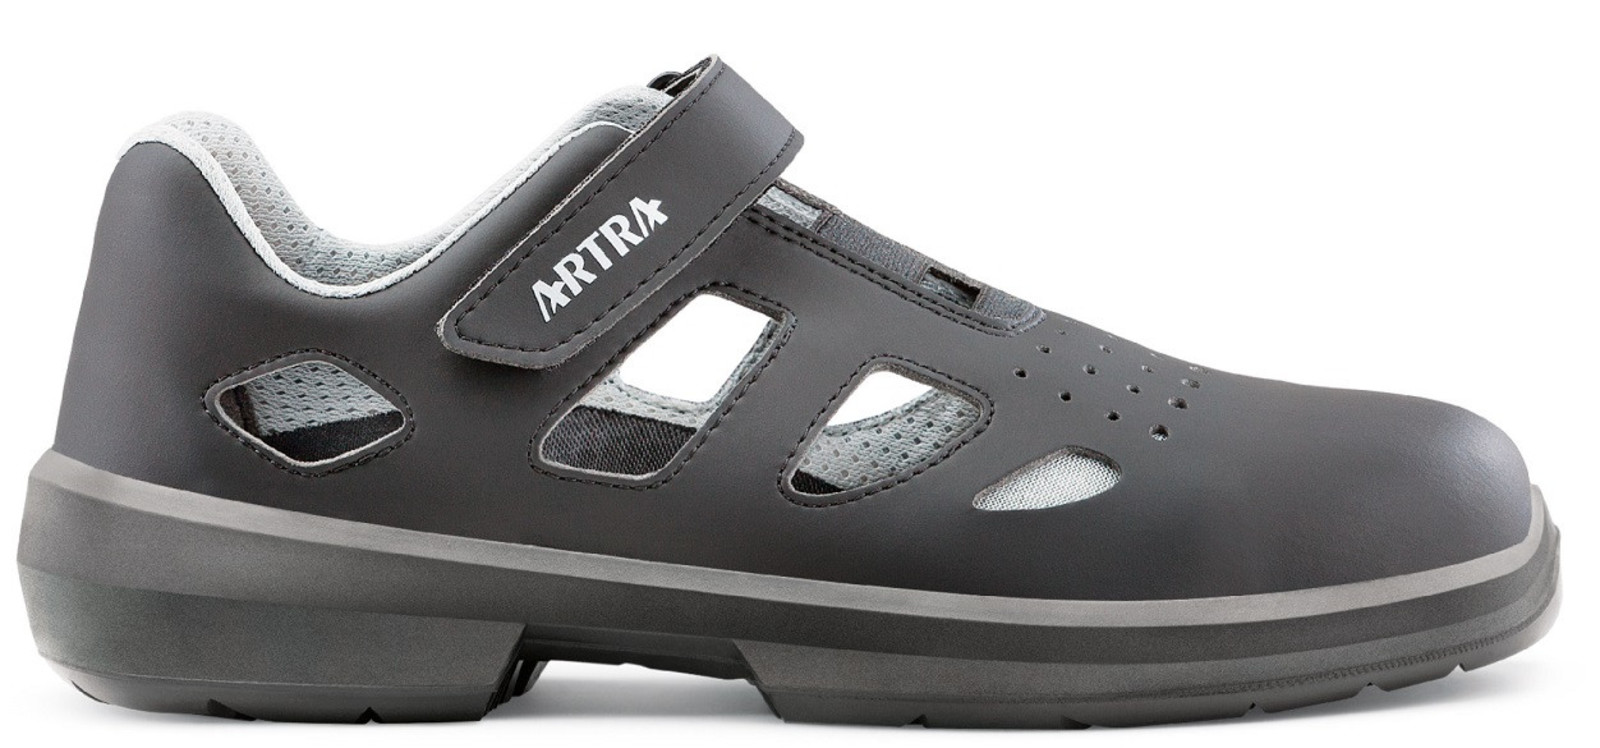 Bezpečnostné sandále Artra Ario 801 671460 S1P - veľkosť: 39, farba: čierna